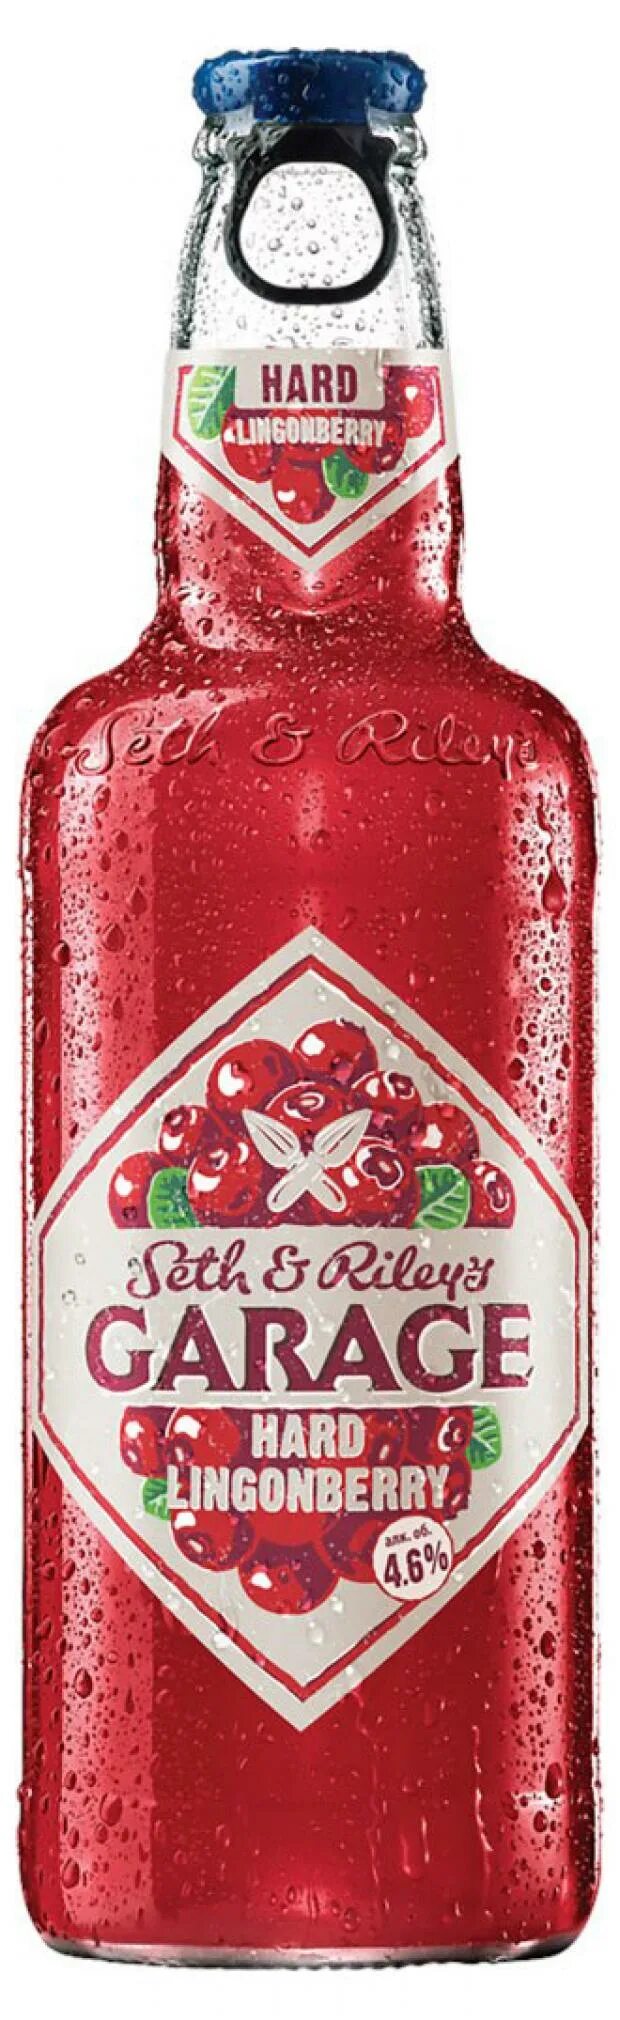 Пивной напиток сет энд Райлис гараж. Пивной напиток Garage Seth & Riley’s Lingonberry 0.44 л. Сет энд Райлис гараж Хард 0,44л. Напиток "сет энд Райлис гараж Хард брусника.